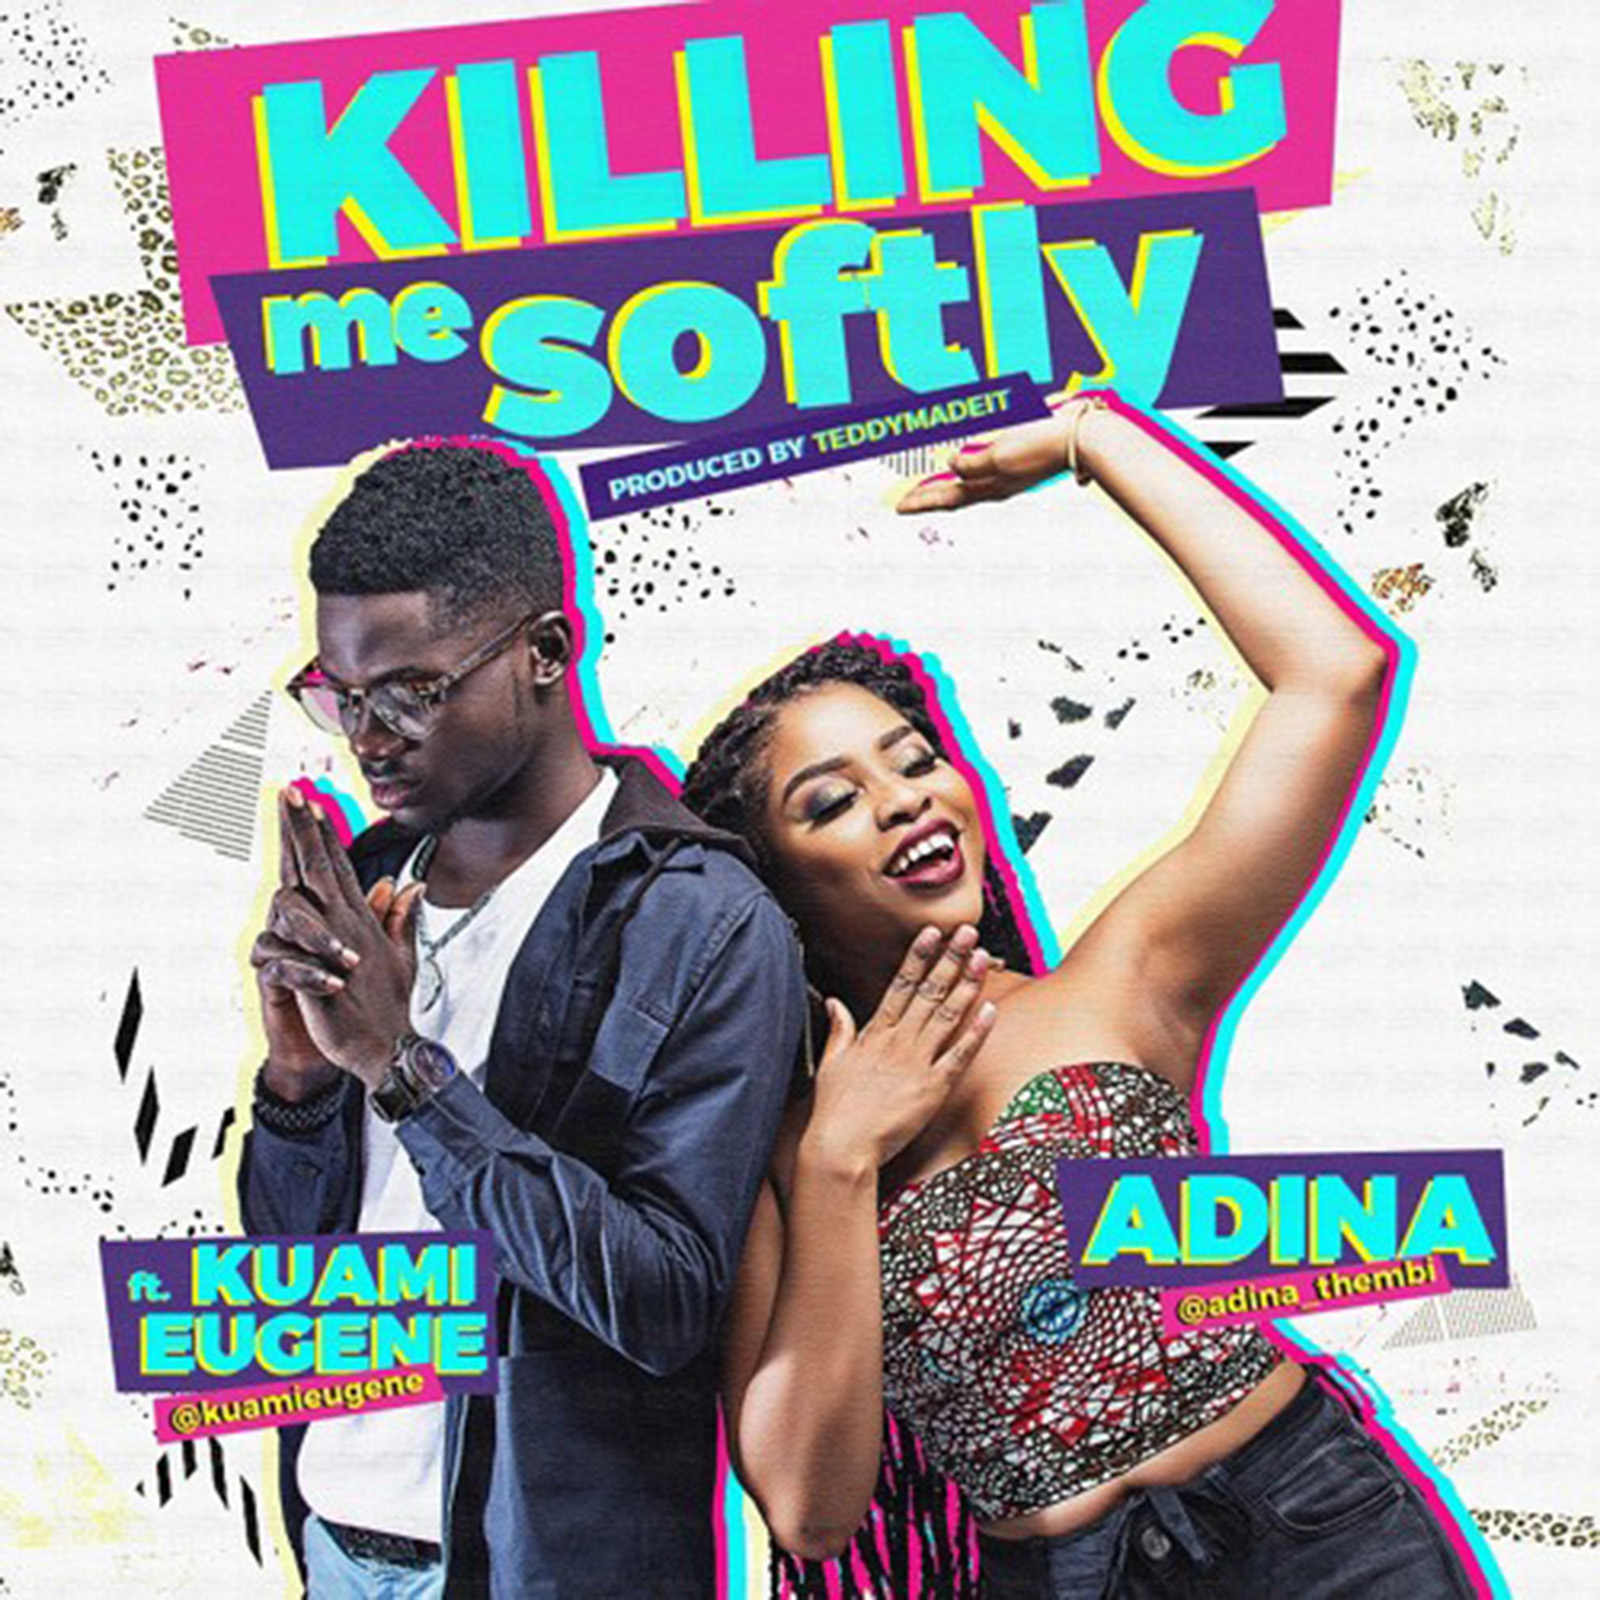 Killing Me Softly by Adina feat. Kuami Eugene